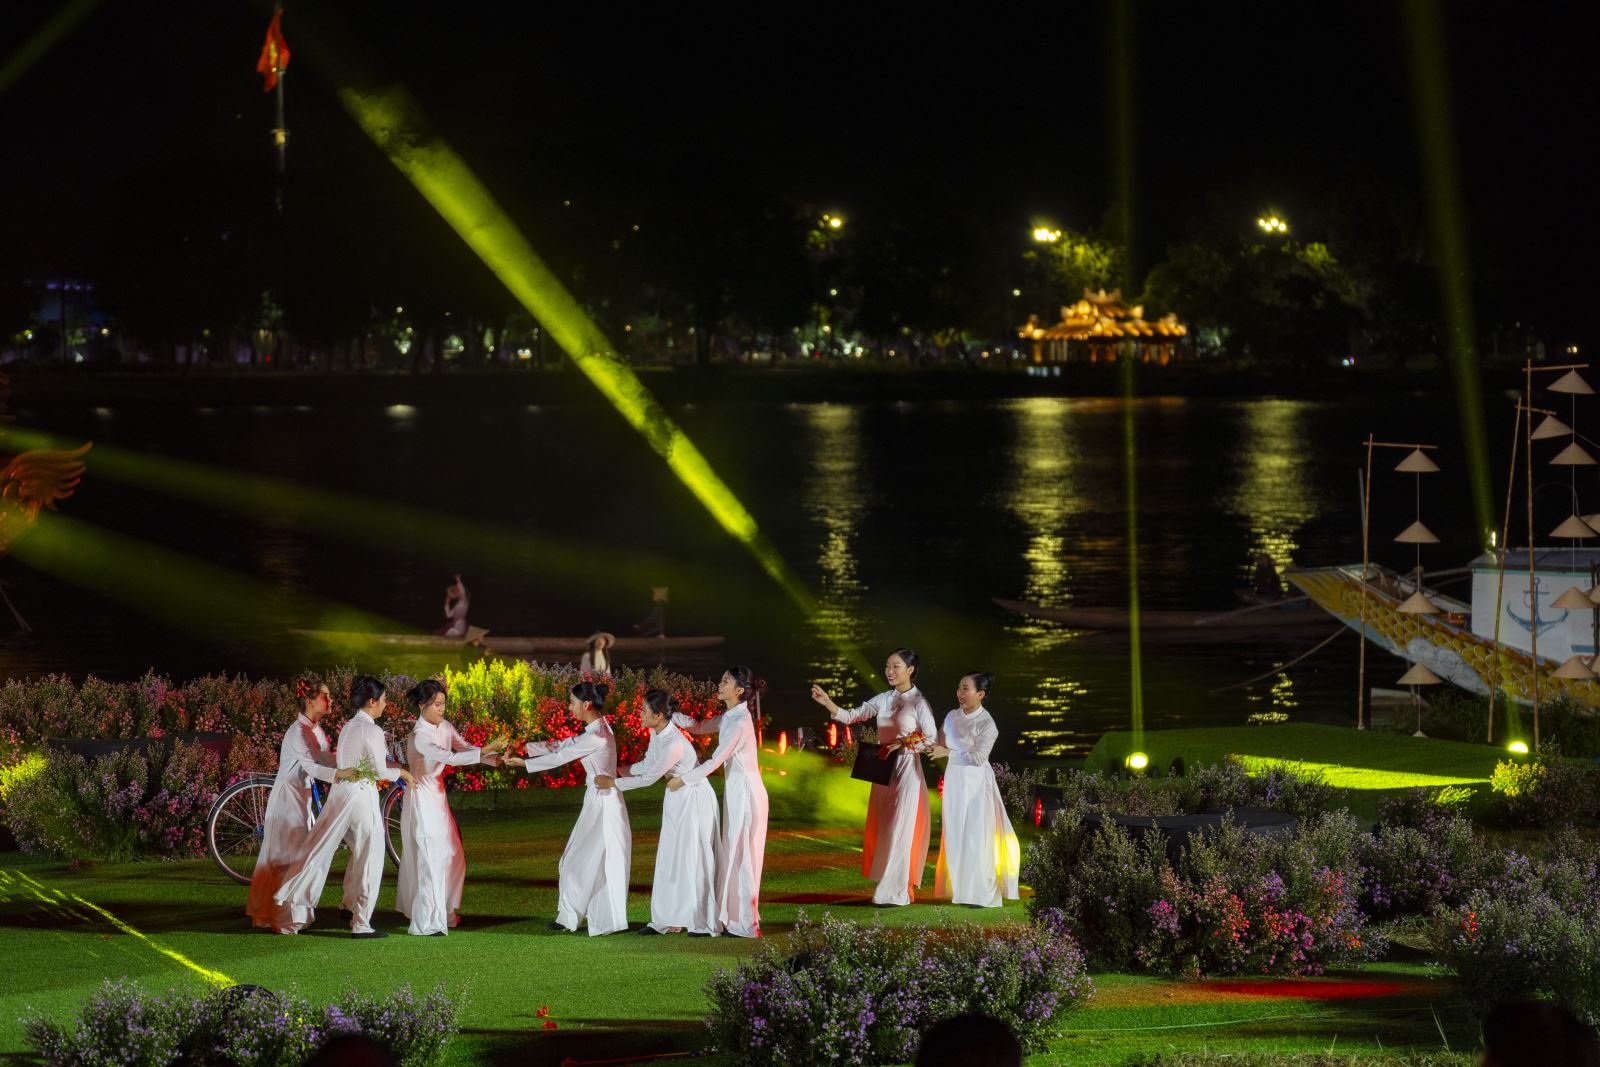 Tổng thể chương trình là câu chuyện kể về dòng sông Hương đã mang lại nhiều cảm xúc cho người dân địa phương và du khách tham gia vào lễ hội.